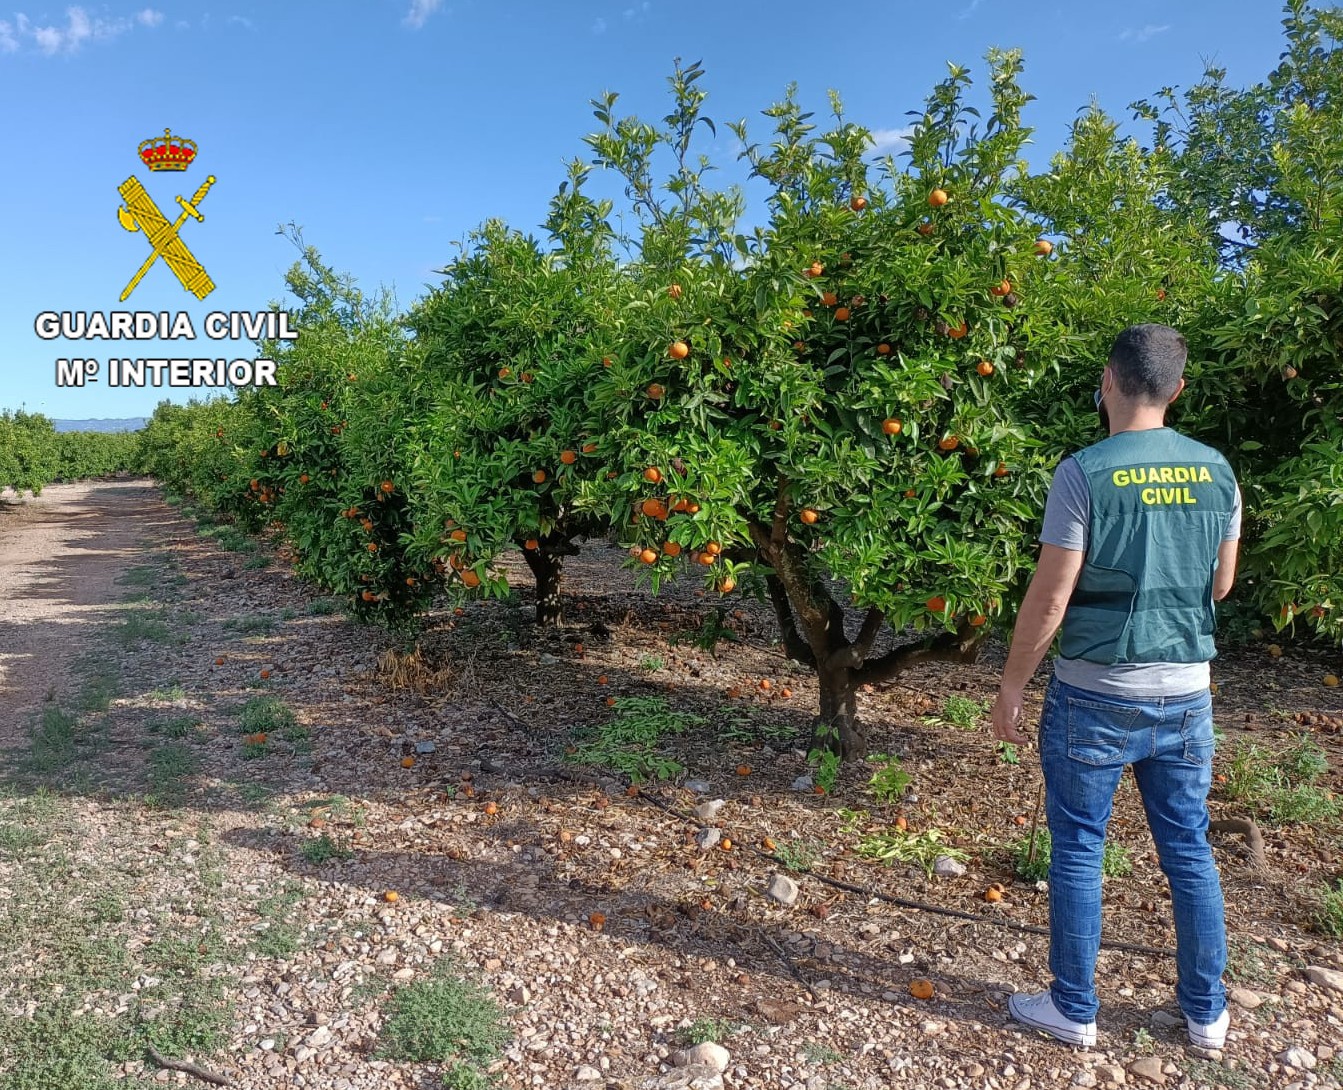 La Guardia Civil detiene a dos personas e investiga otra por la sustracción de 35.000 kg de naranjas en las localidades de Vinaròs, Sant Jordi y Traiguera